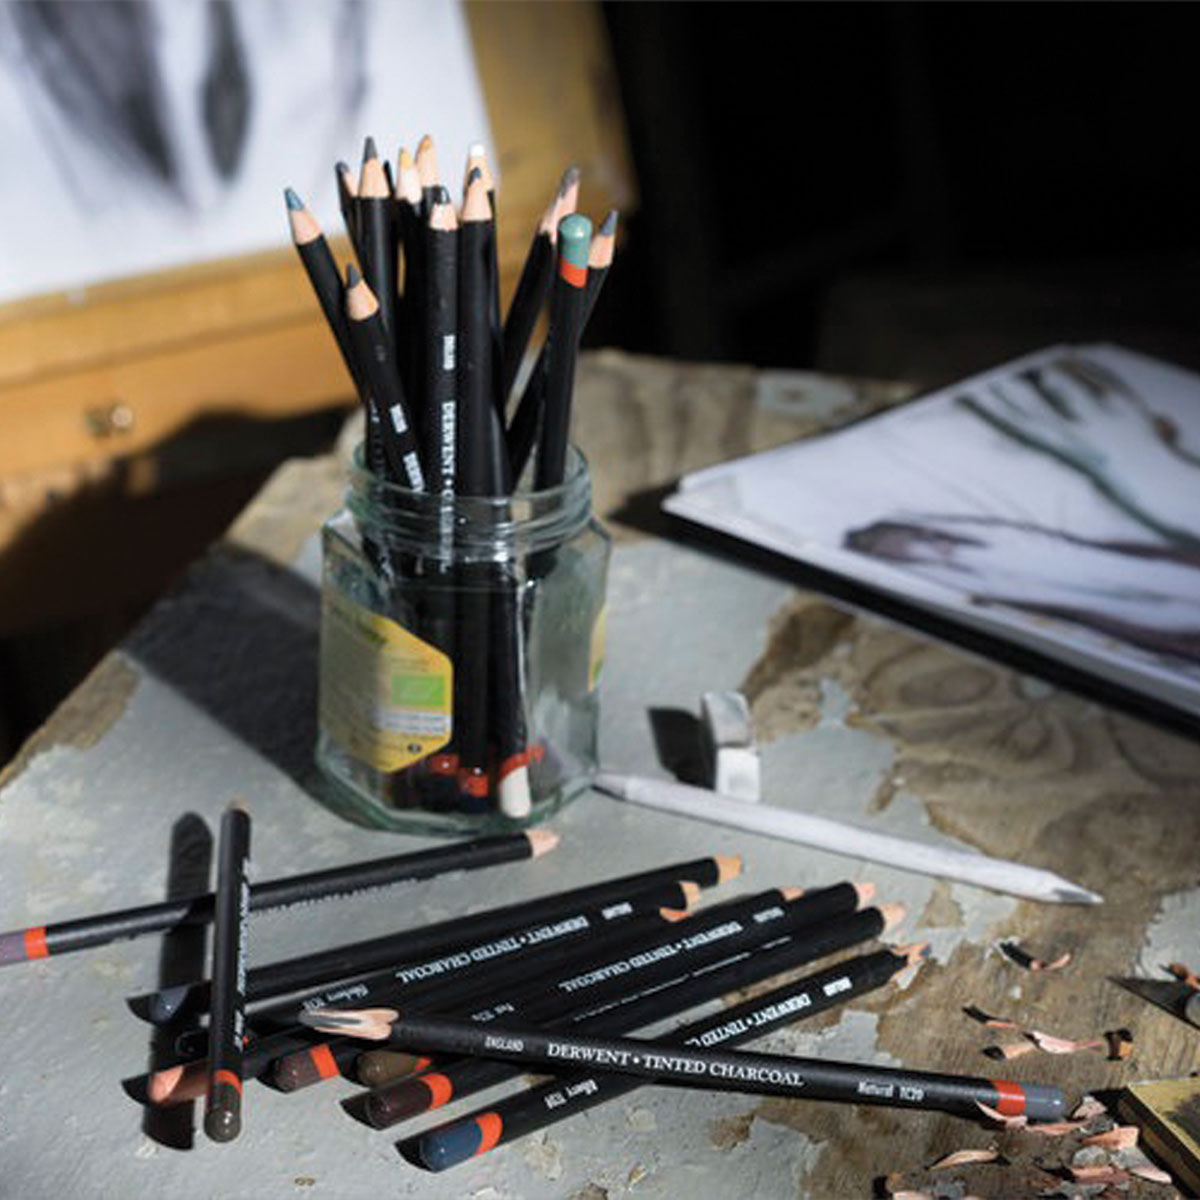 Crayon fusain teinté Charcoal Derwent chez Rougier & Plé